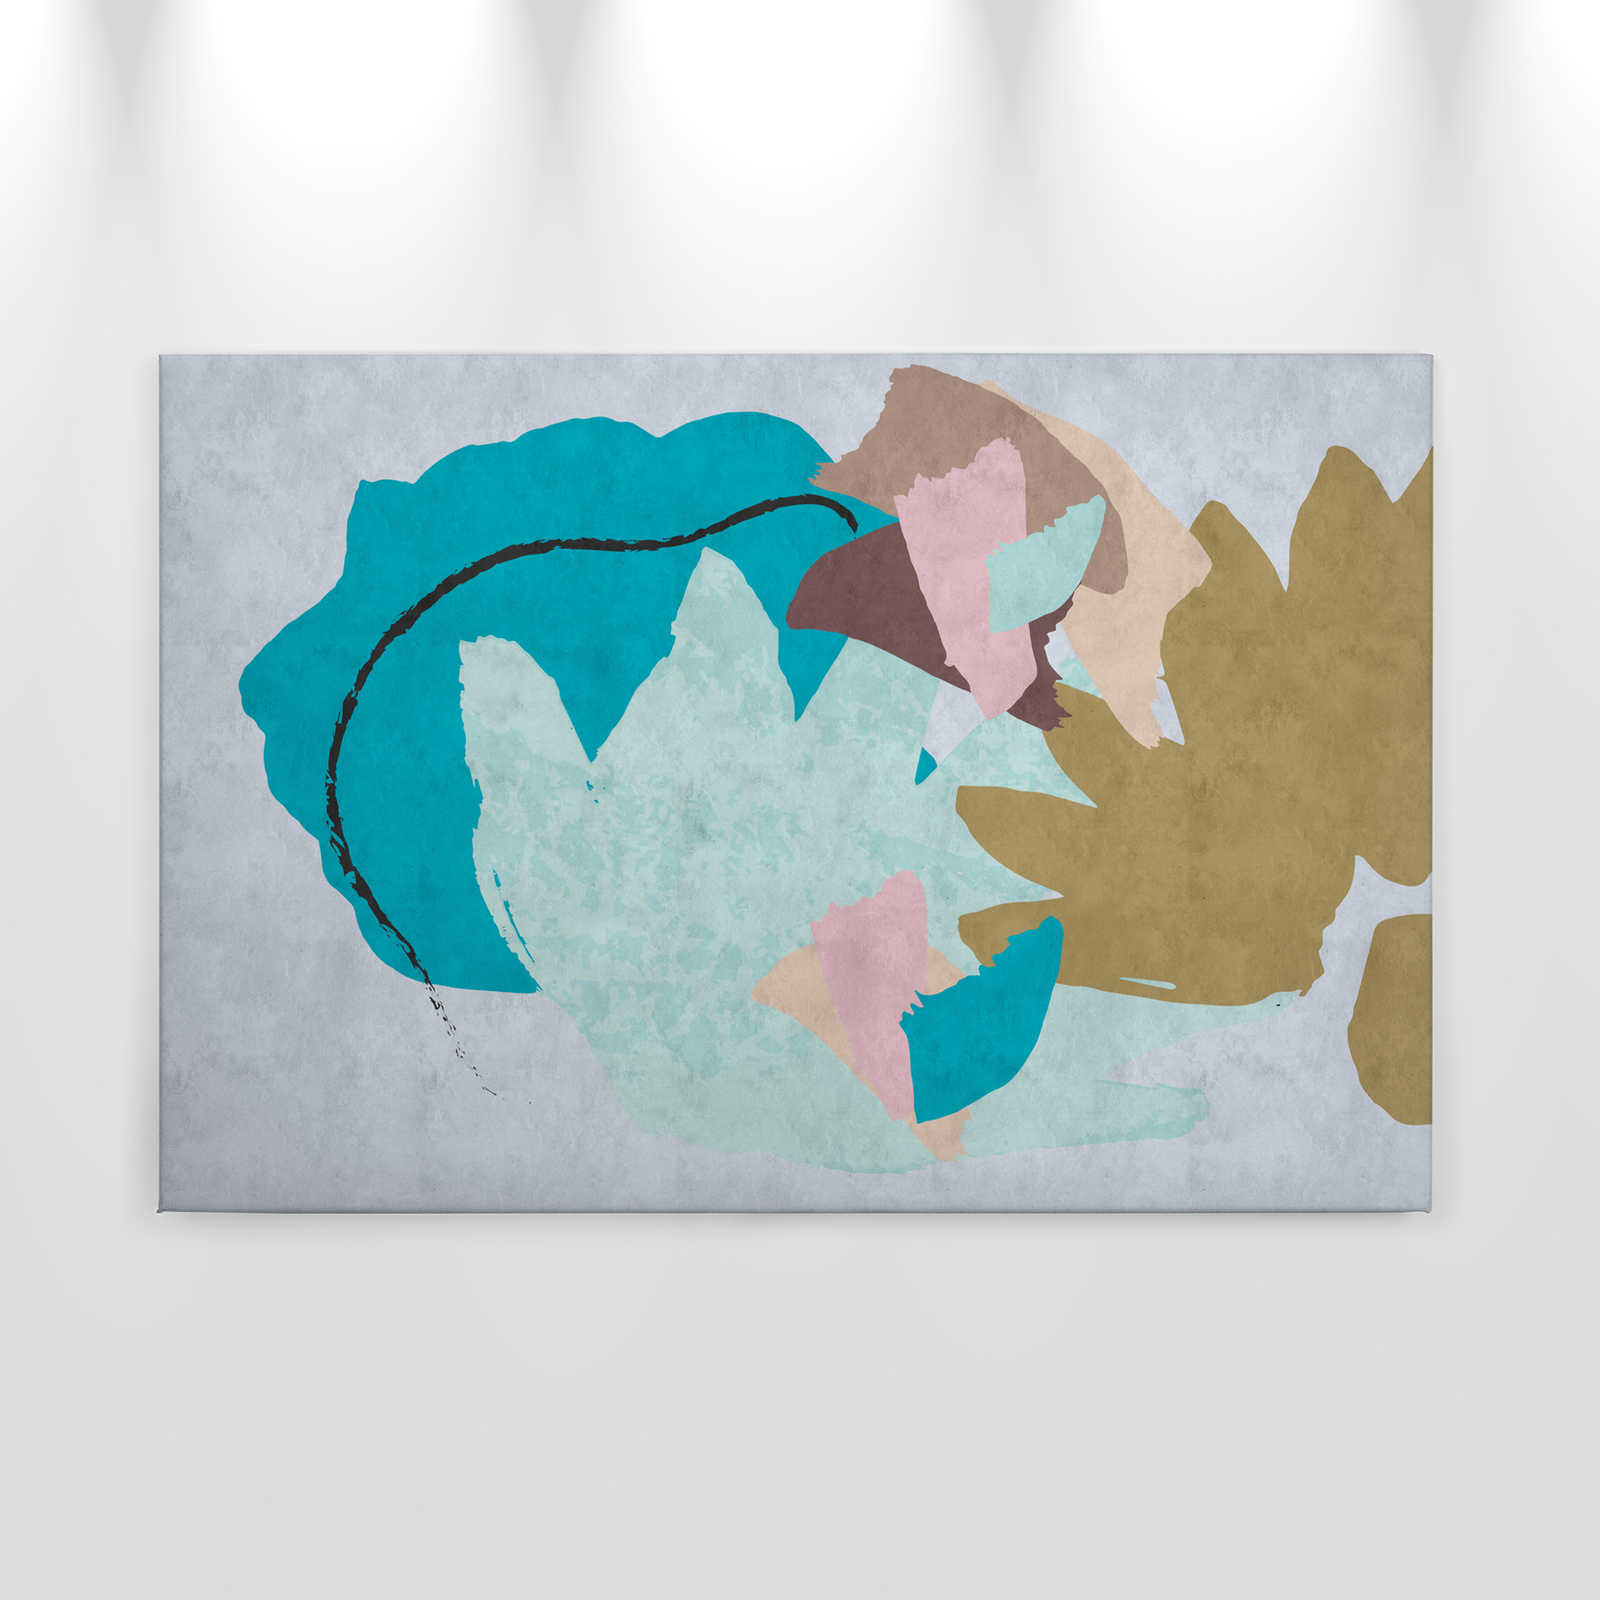             Bloemrijkcollage 1 - Abstract canvas schilderij, kleurrijke kunst - vloeipapier textuur - 0.90 m x 0.60 m
        